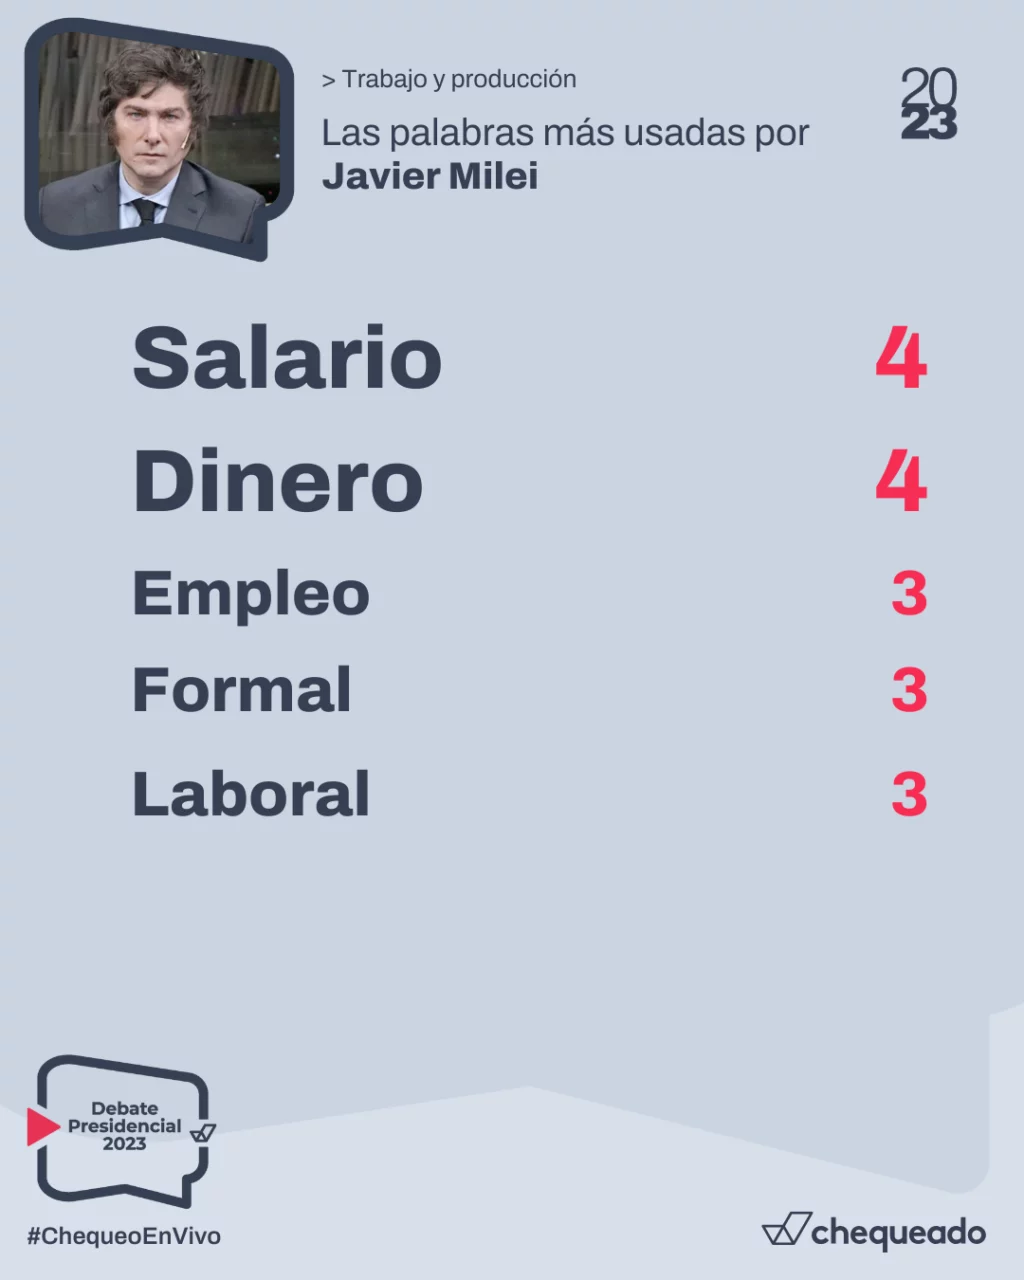 Debate presidencial 2023: qué dijo Javier Milei sobre trabajo y producción